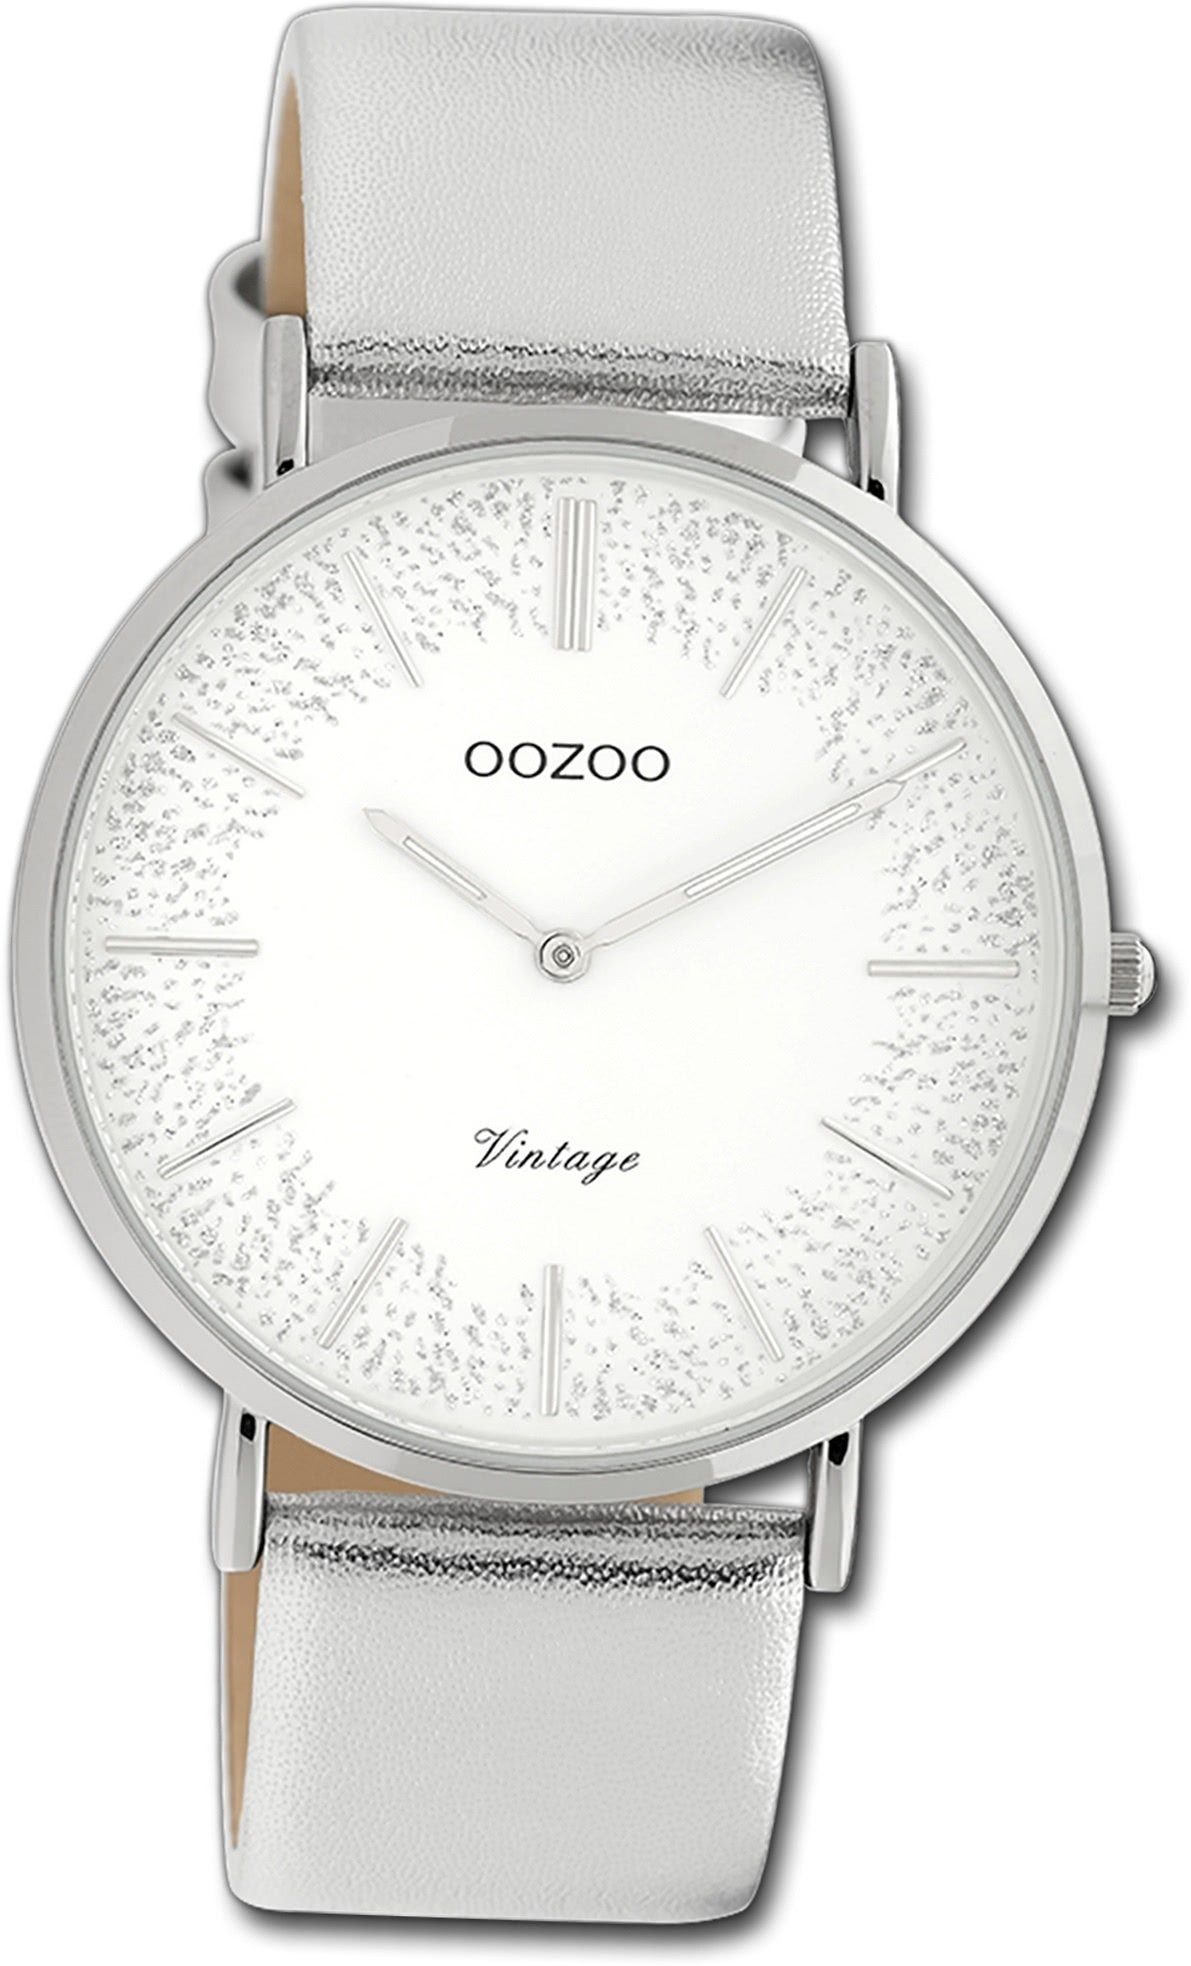 Damen Armbanduhr groß Lederarmband Slim, rundes Quarzuhr OOZOO silber, Damenuhr (ca. 40mm) Oozoo Gehäuse, Ultra